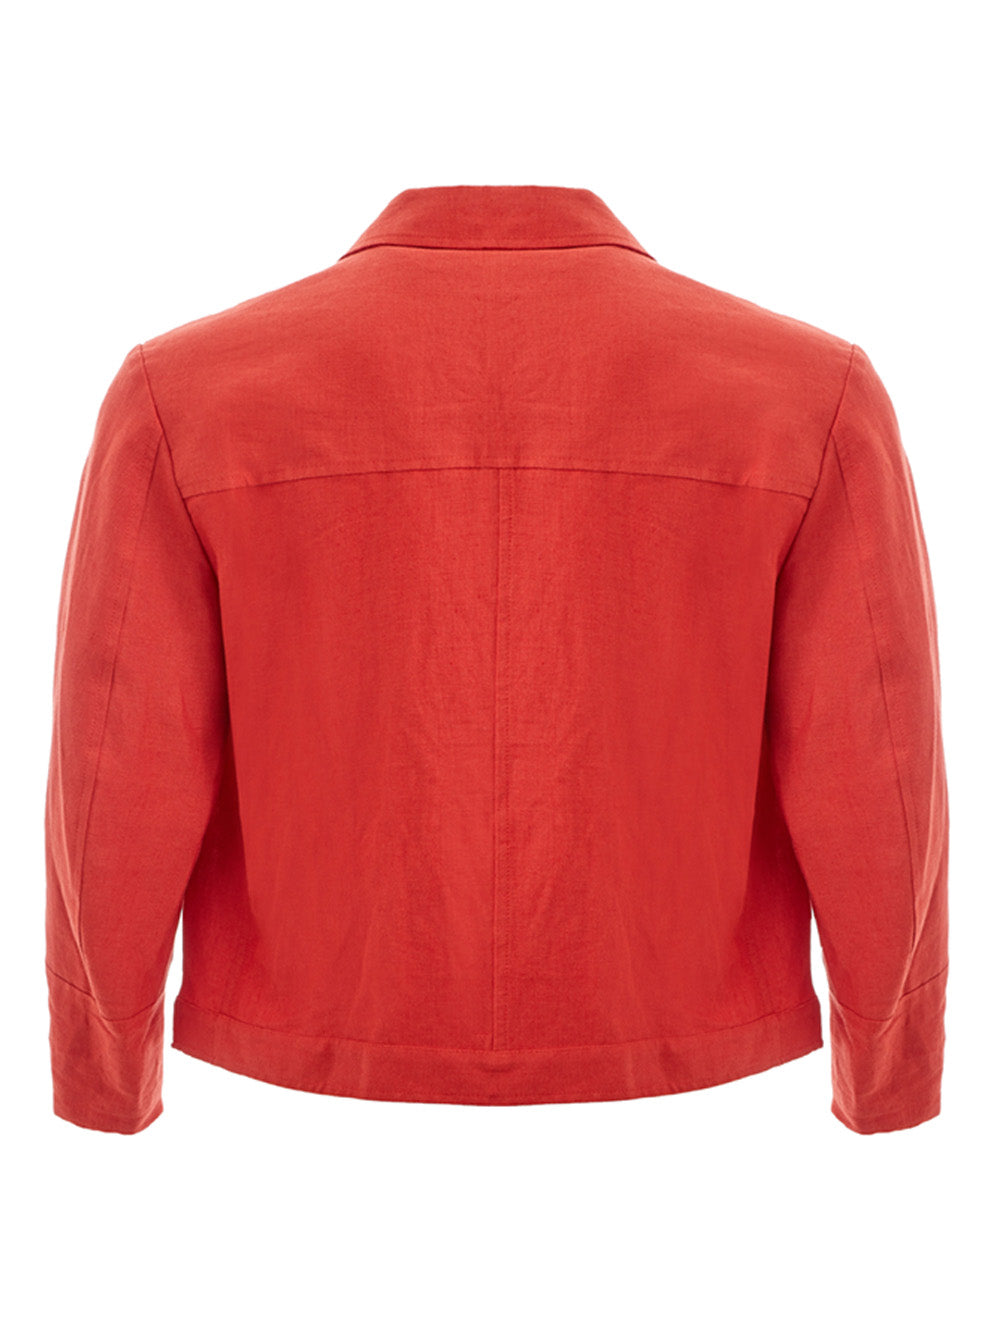 Orange Cropped Jacket in Linen Effect